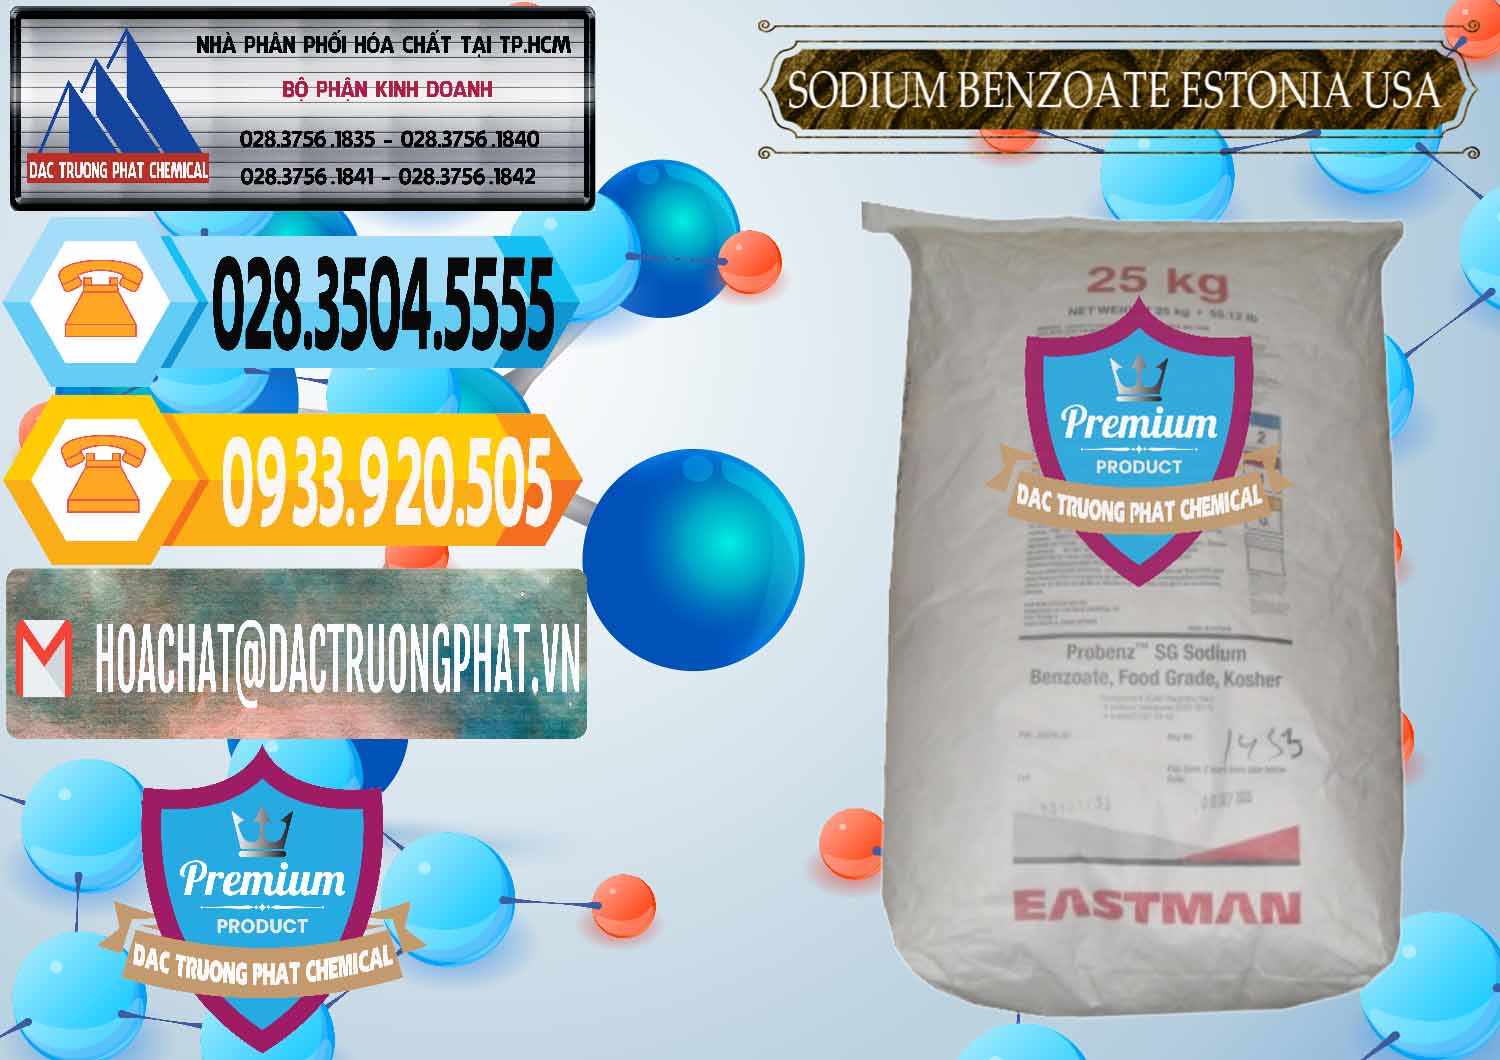 Cty cung ứng & bán Sodium Benzoate - Mốc Bột Estonia Mỹ USA - 0468 - Nhà phân phối và cung cấp hóa chất tại TP.HCM - hoachattayrua.net